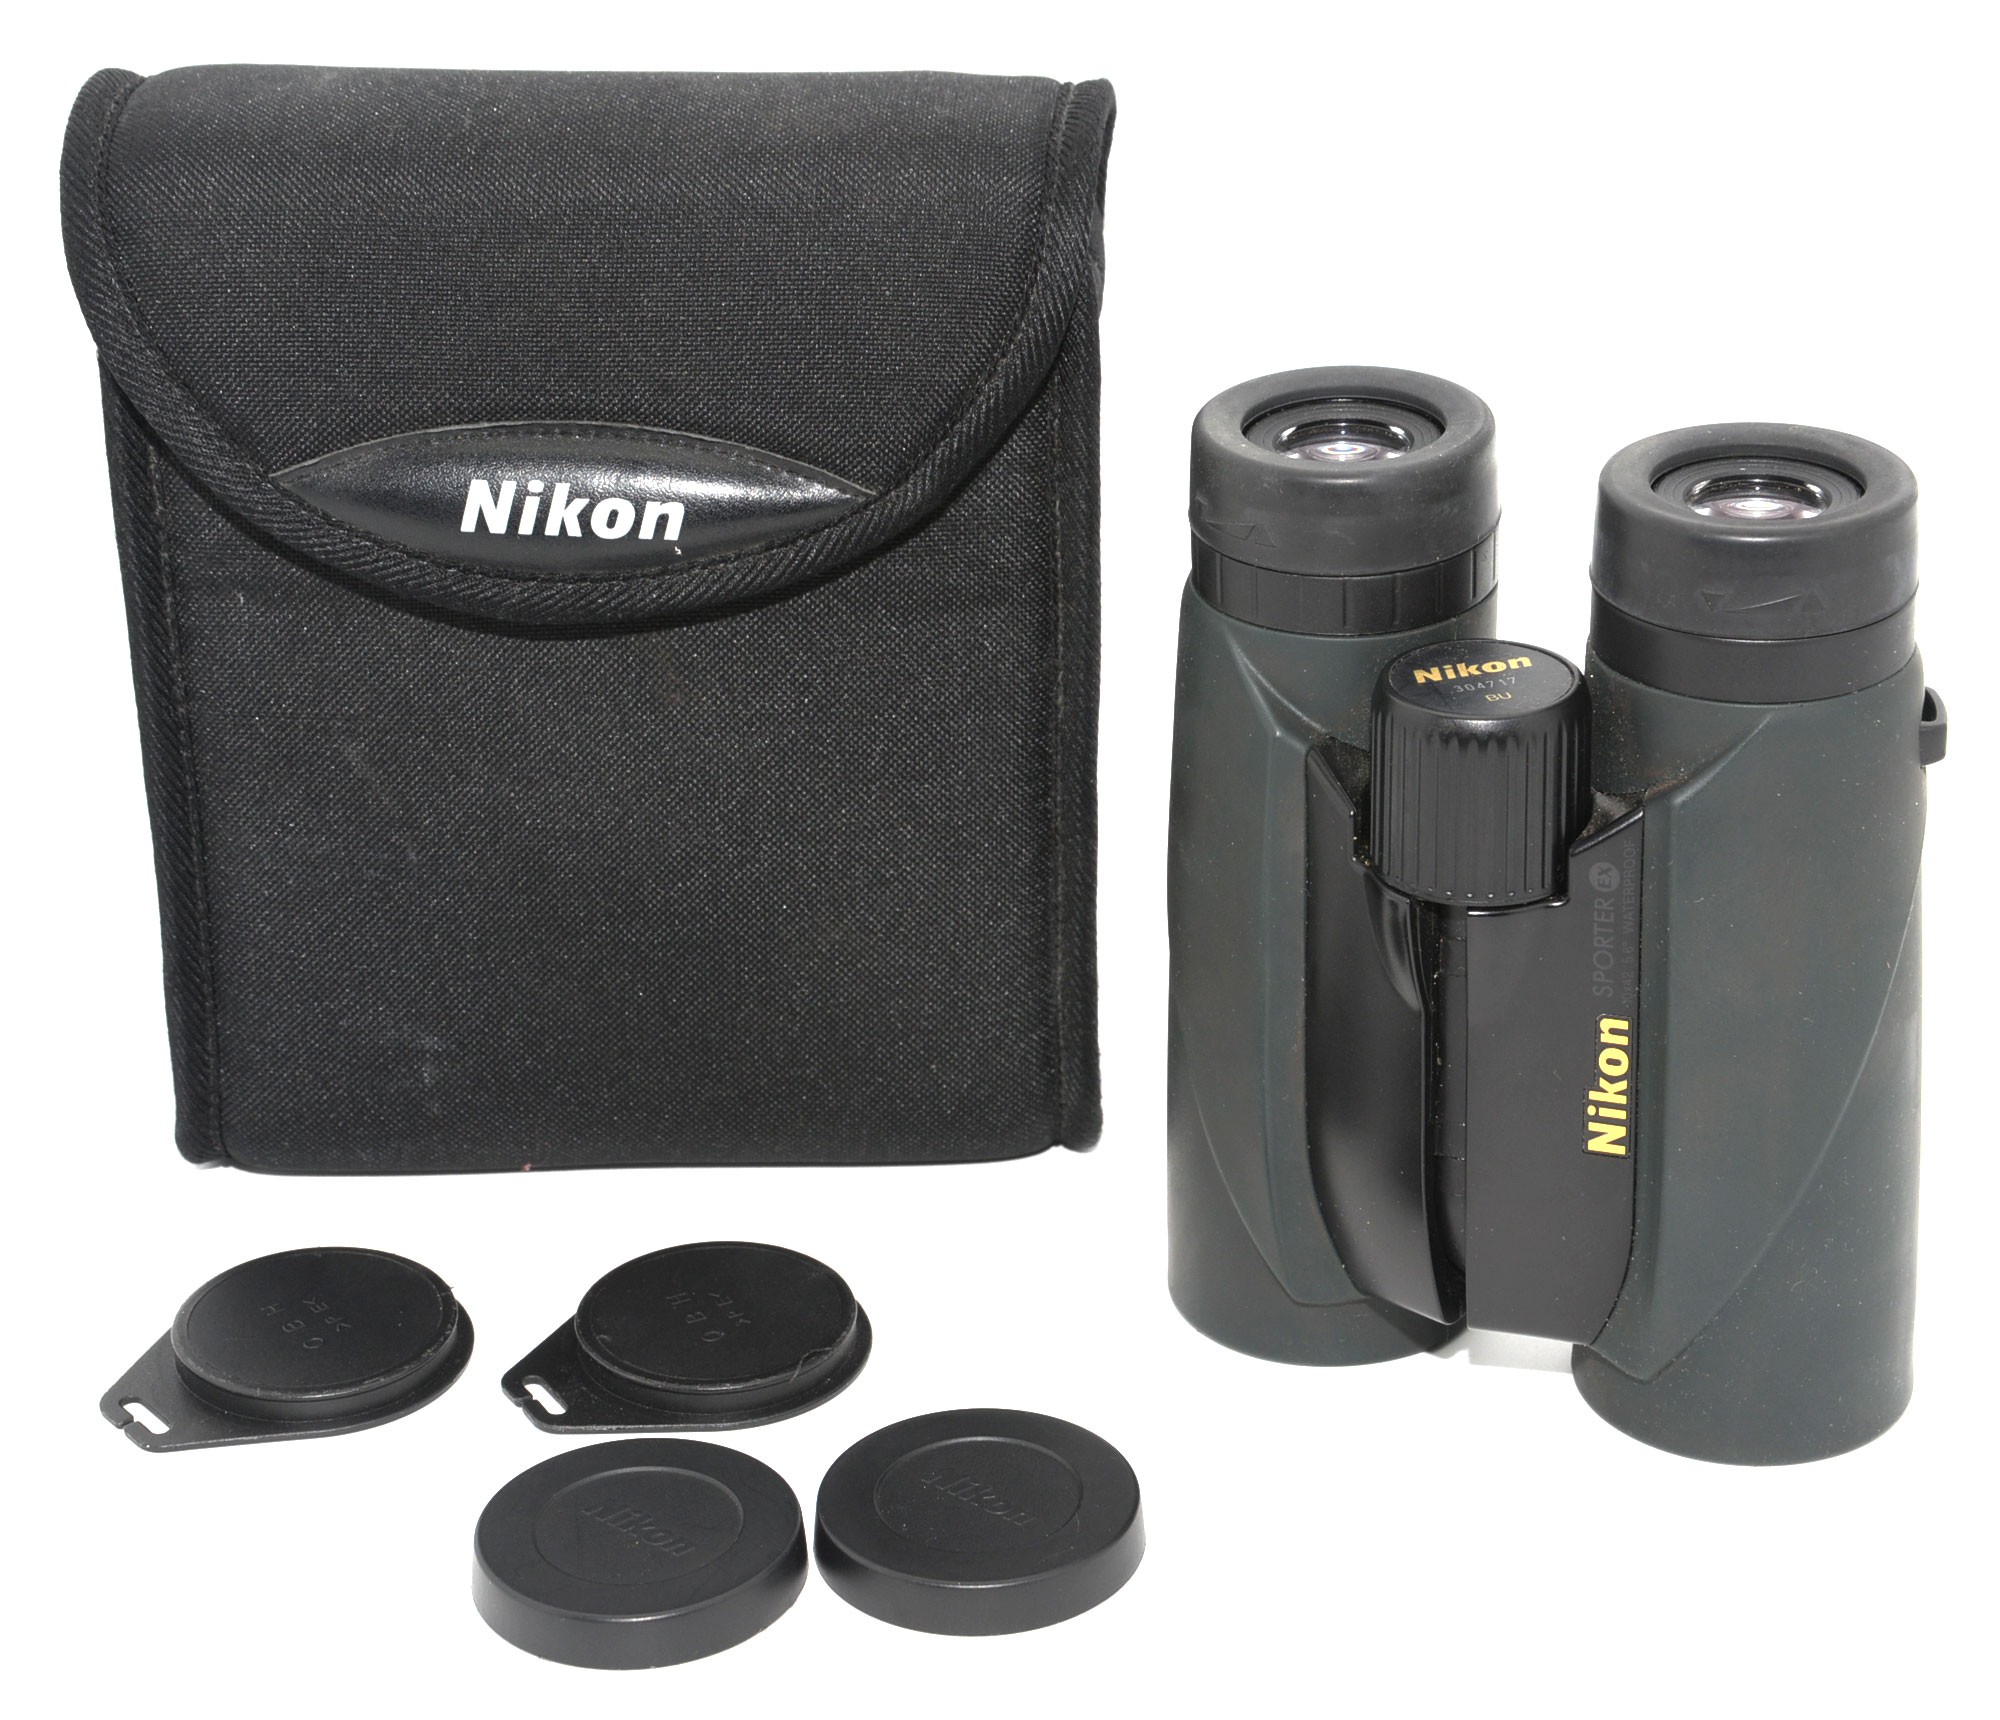 Prismáticos Nikon Sporter 10 x 50 - MercaOlé